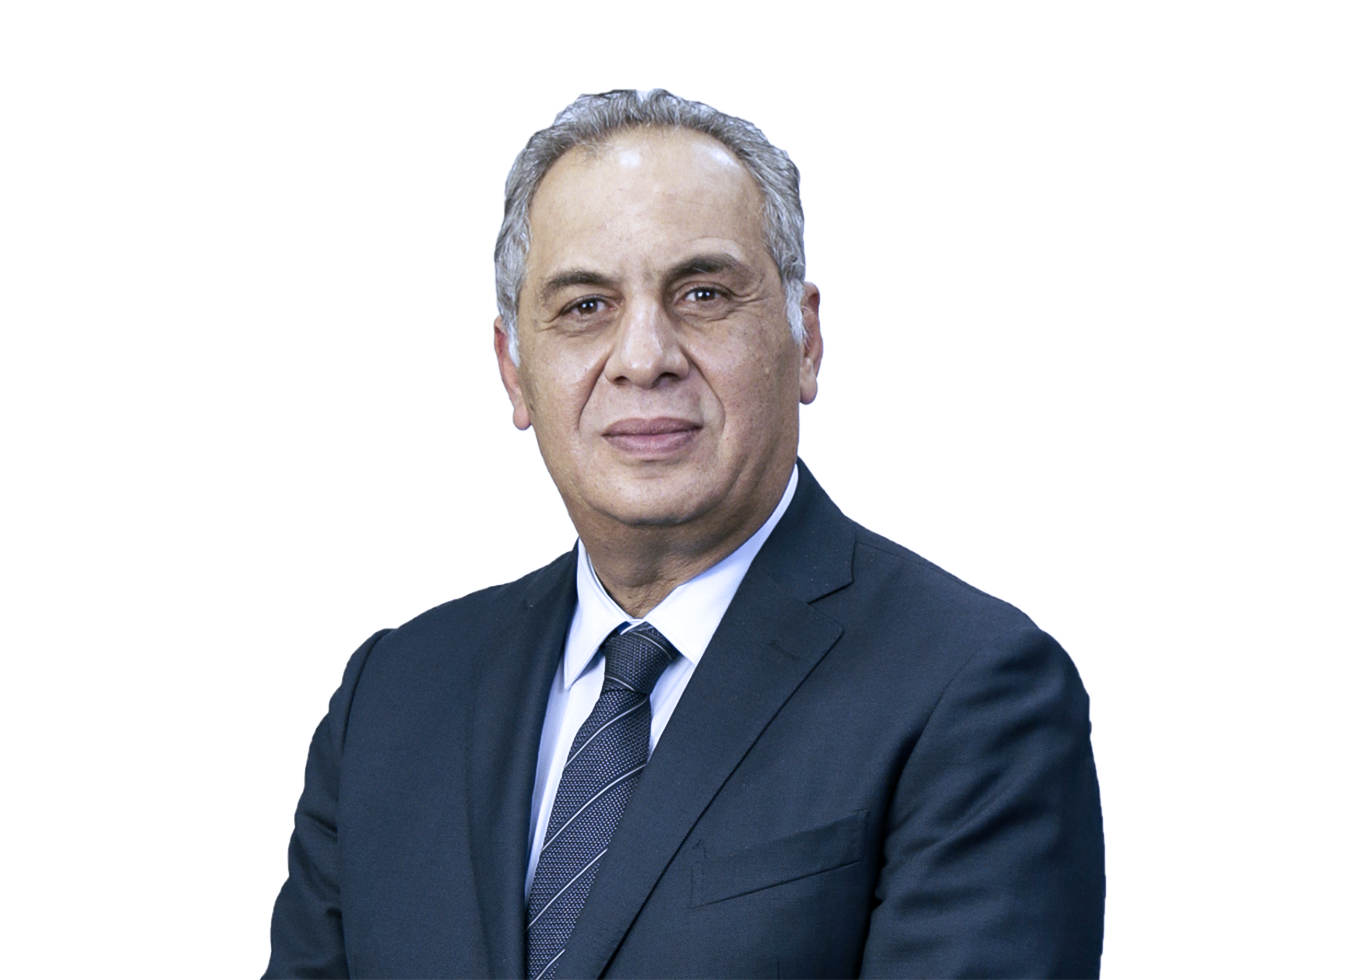 Khaled Lotfy Hassan Mohamed El Attar